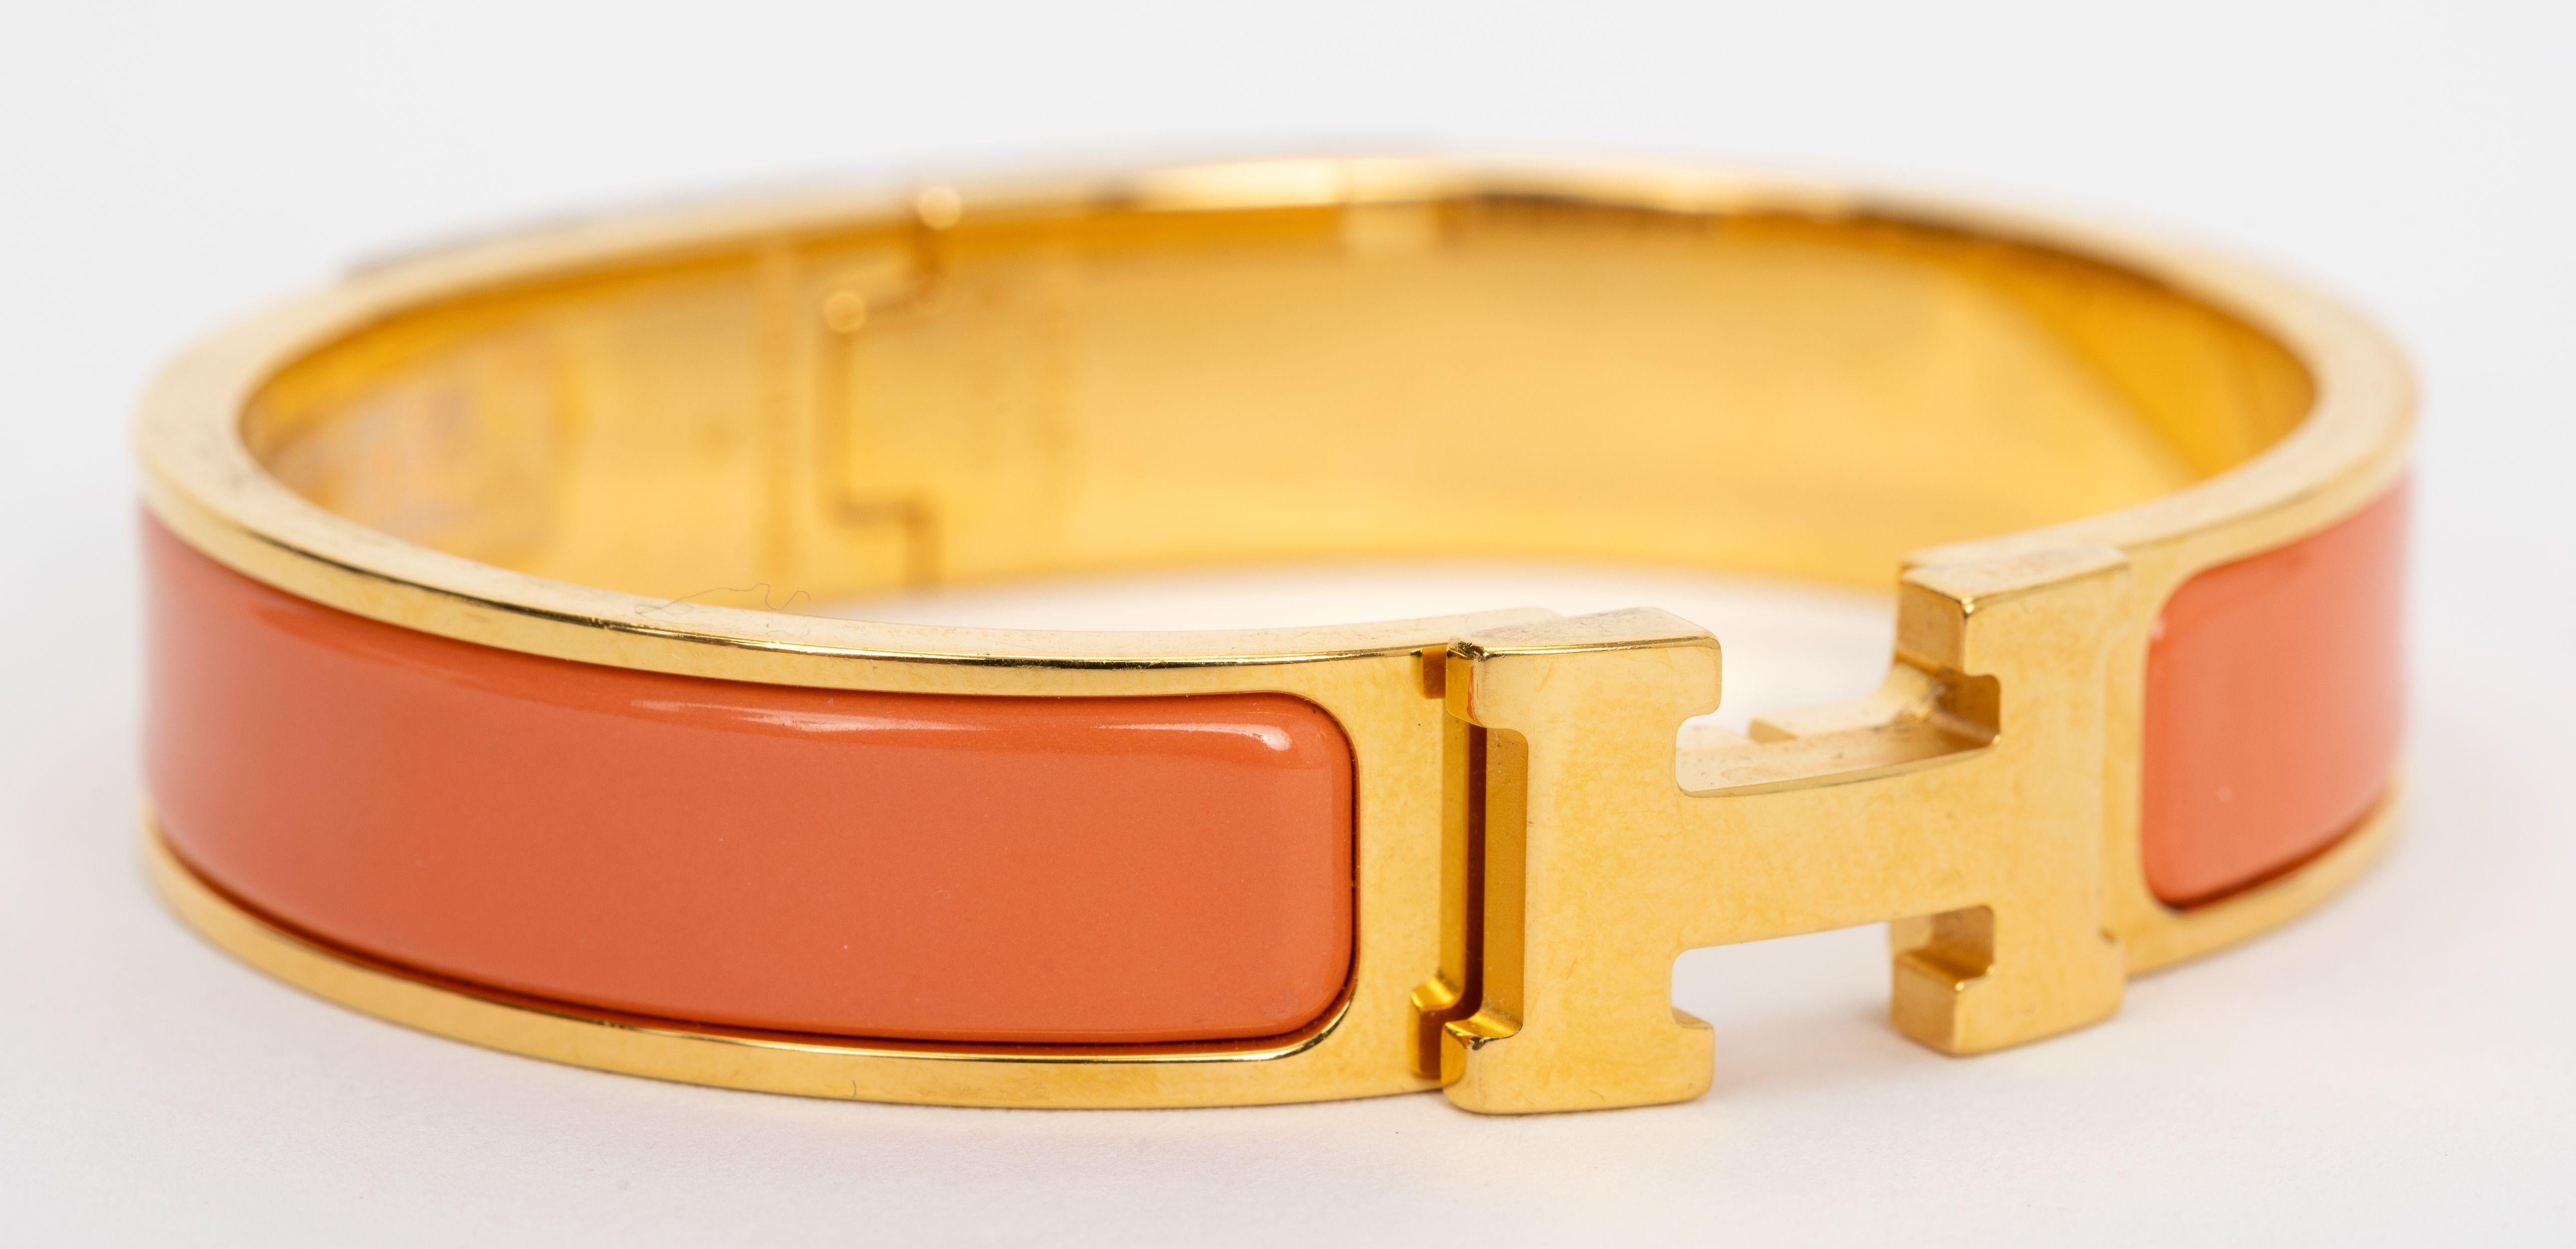 Le bracelet Hermes Clic Clac H, étroit,  en émail pêche melba, avec des accessoires plaqués or.
Taille PM, neuf, non porté, livré avec une pochette en velours.